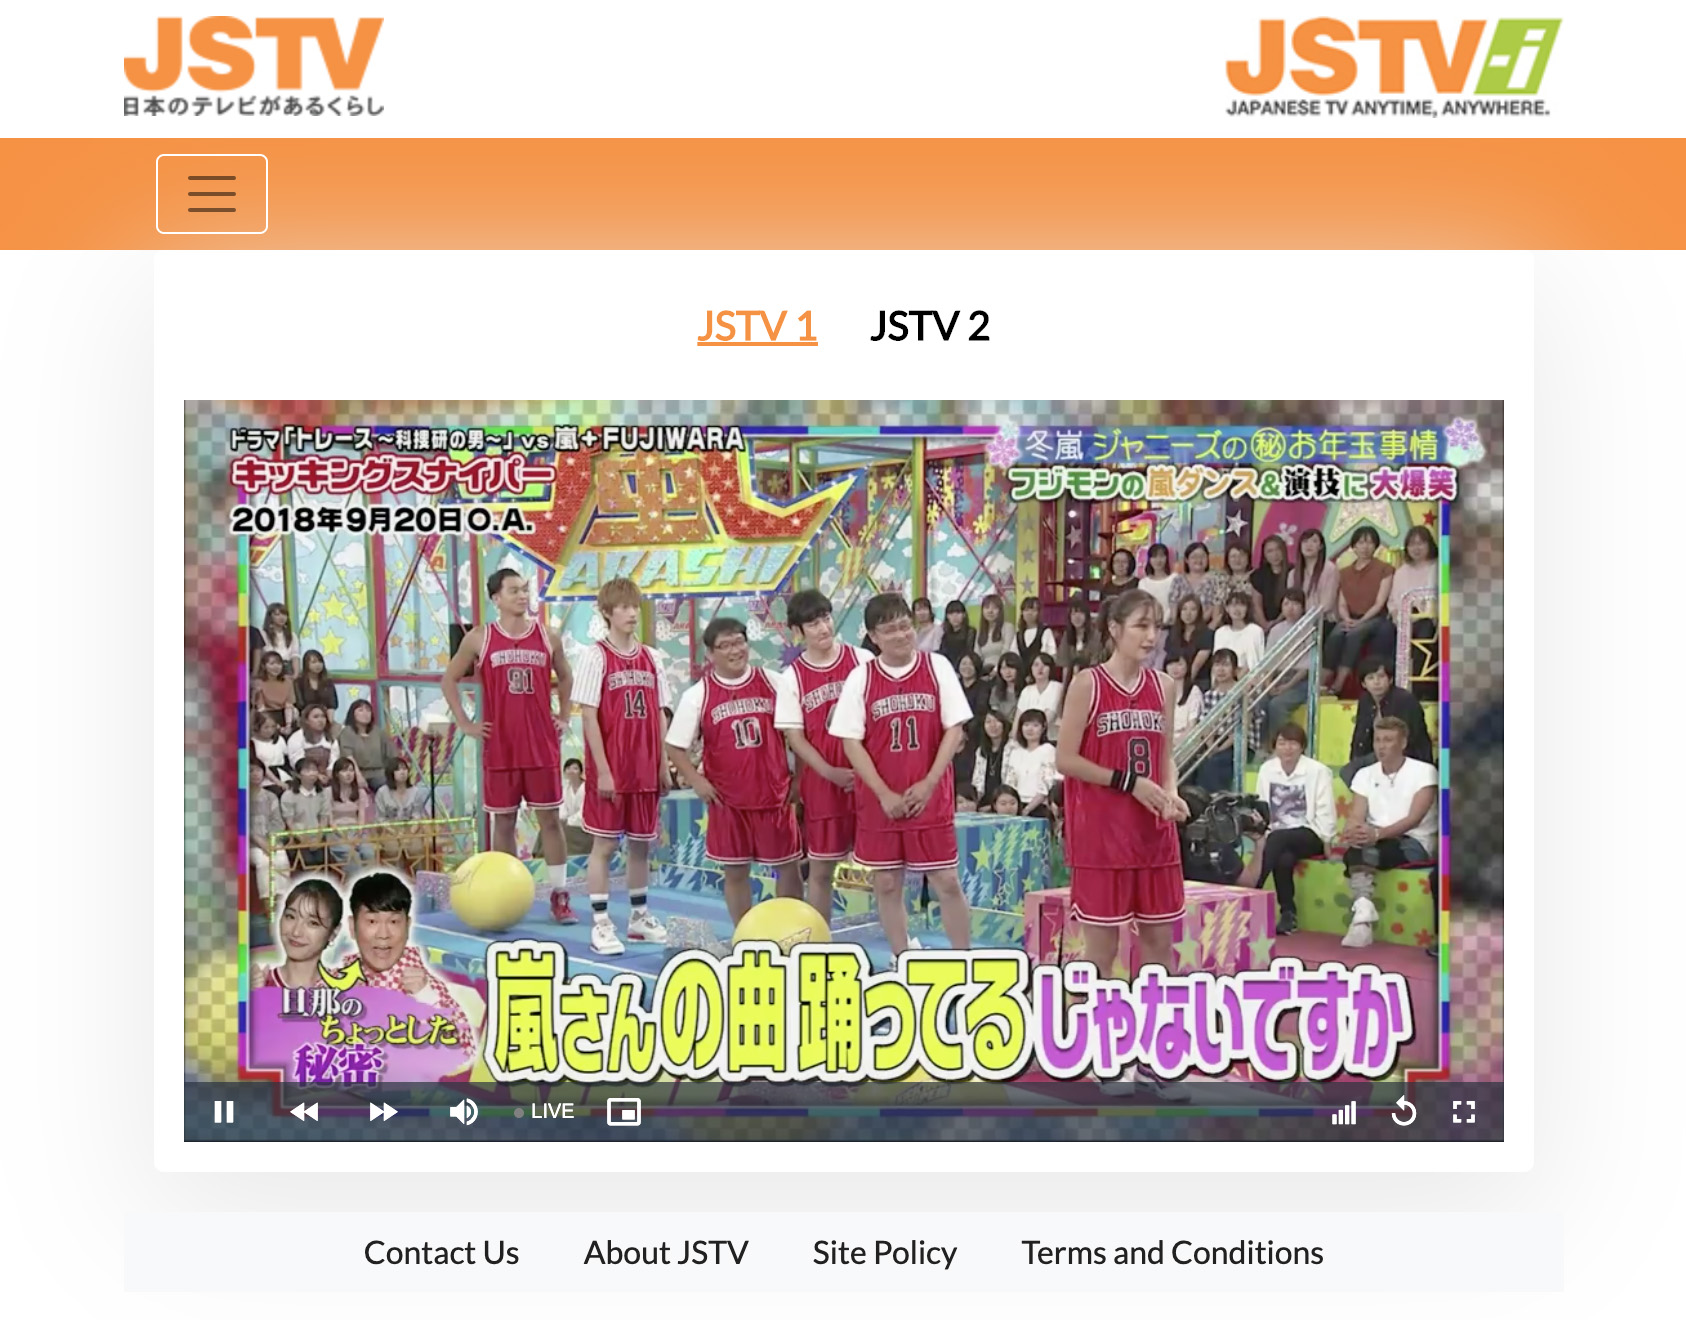 Japanese TV in the UK: JSTV-i